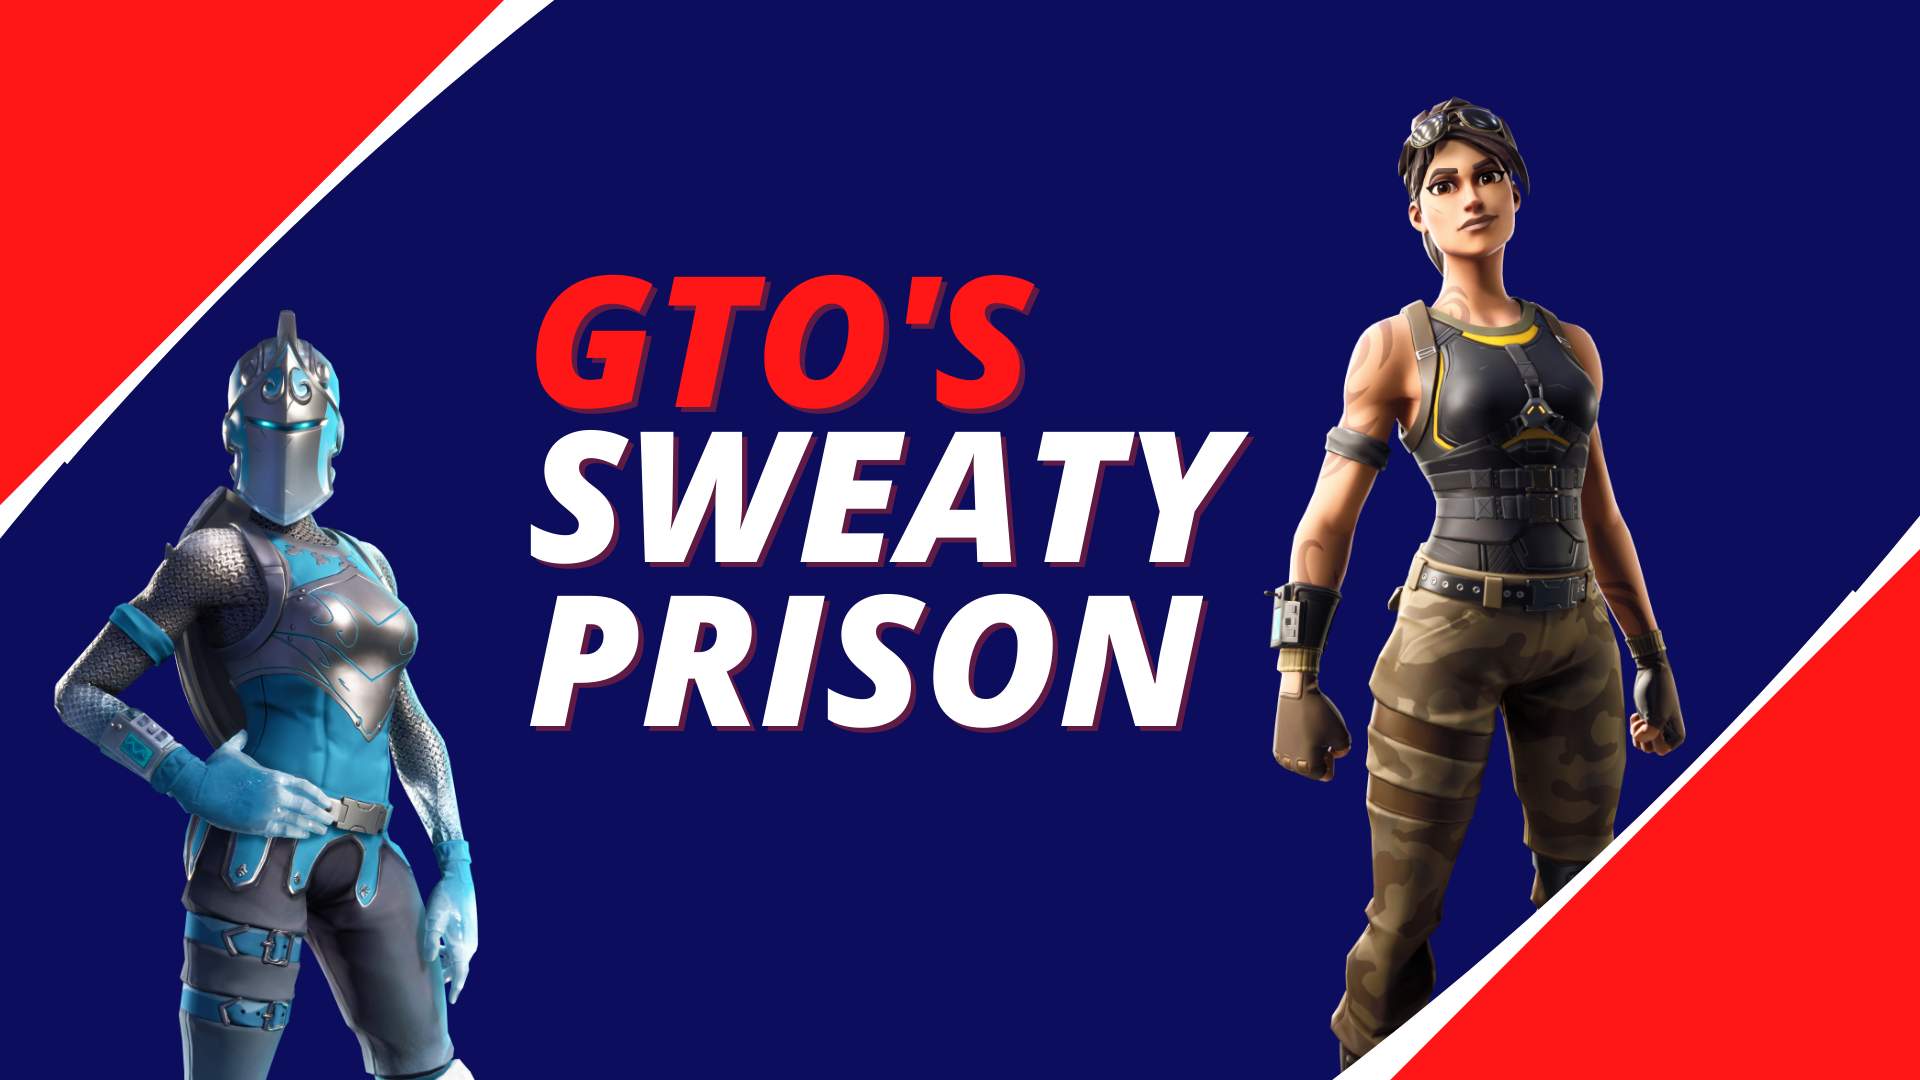 GTO'S SWEATY PRISON